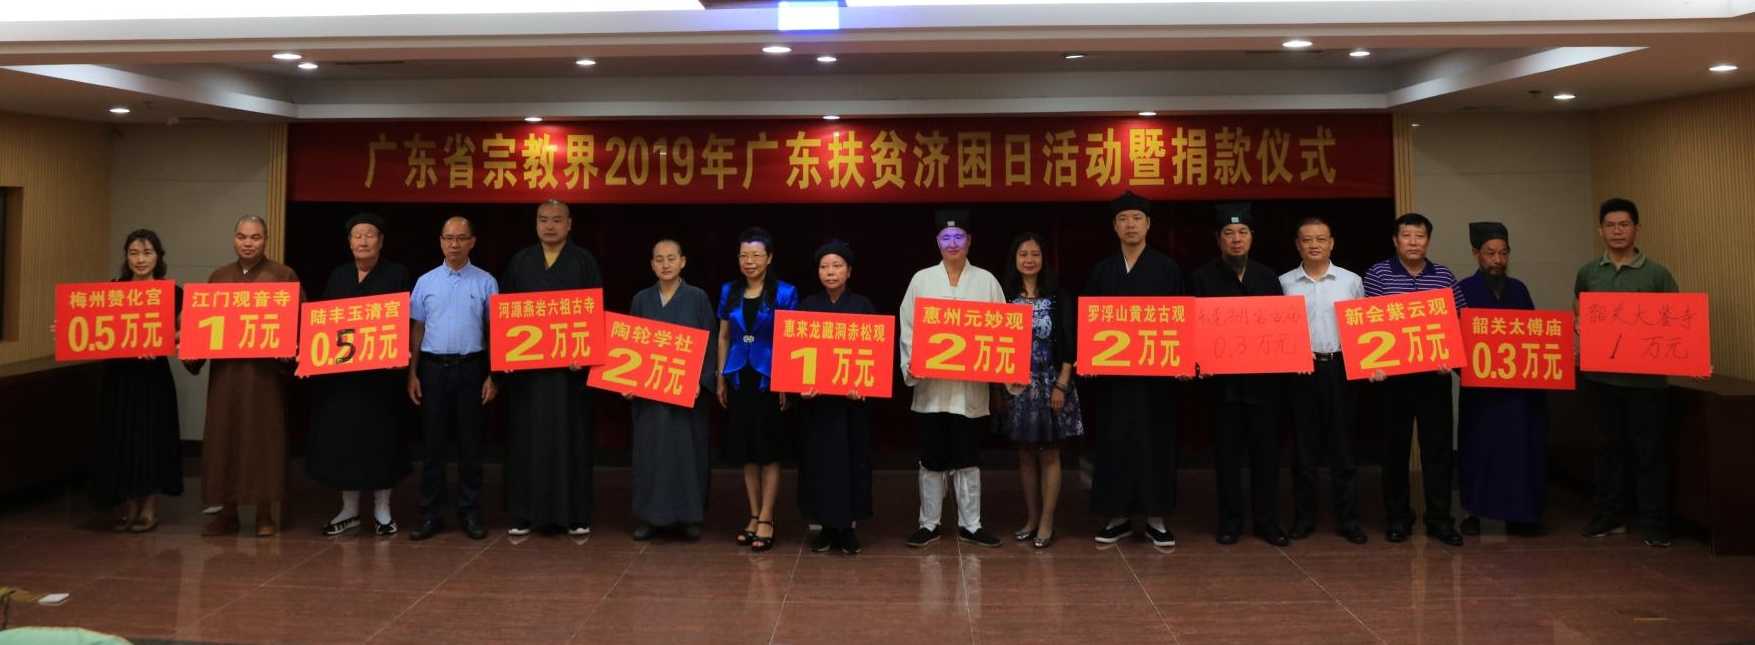 广东省宗教界代表人士捐款助力民族地区发展 